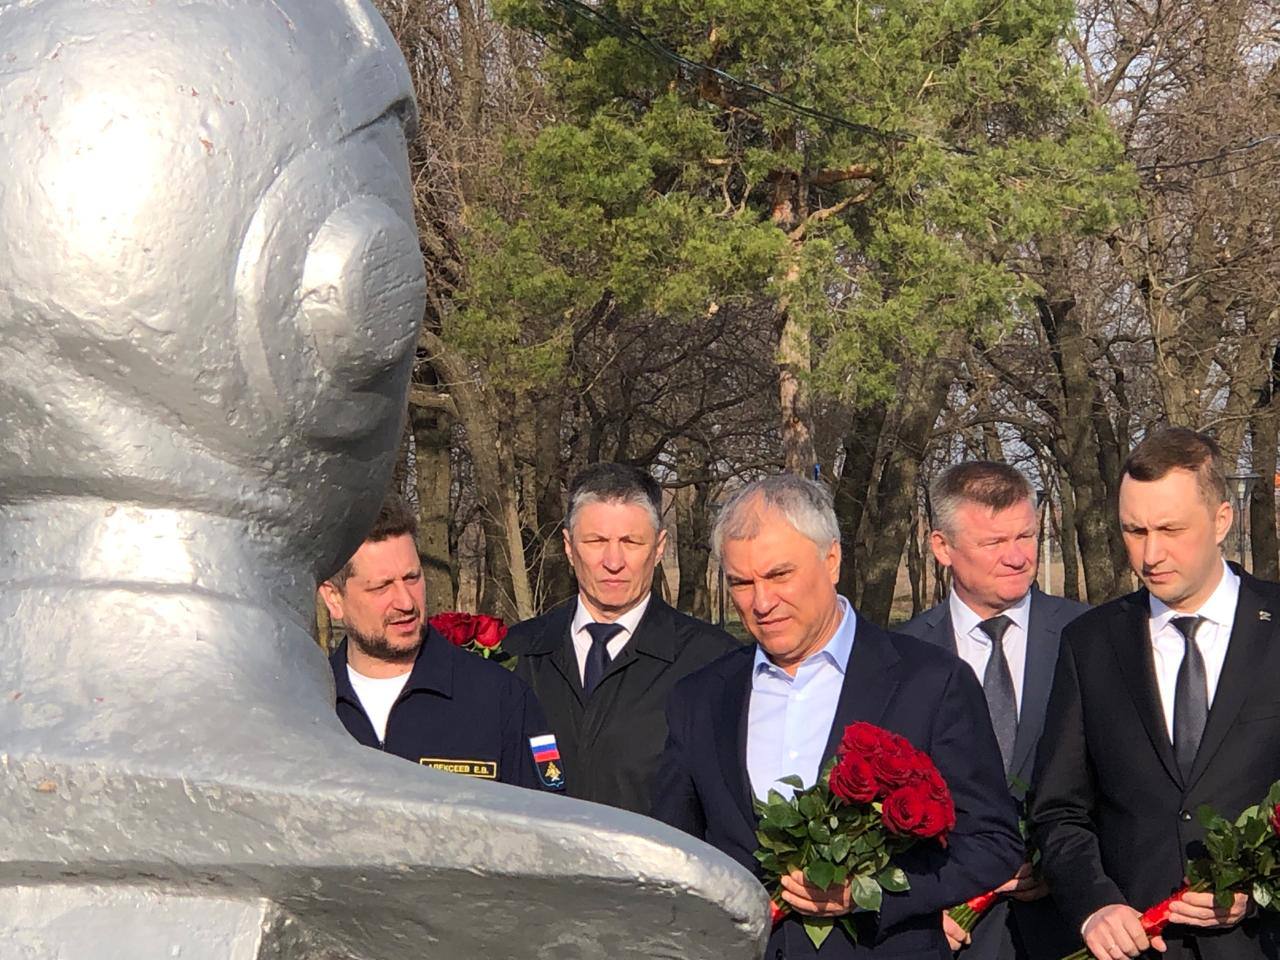 Вячеслав Володин в День космонавтики возложил цветы к памятнику Гагарину